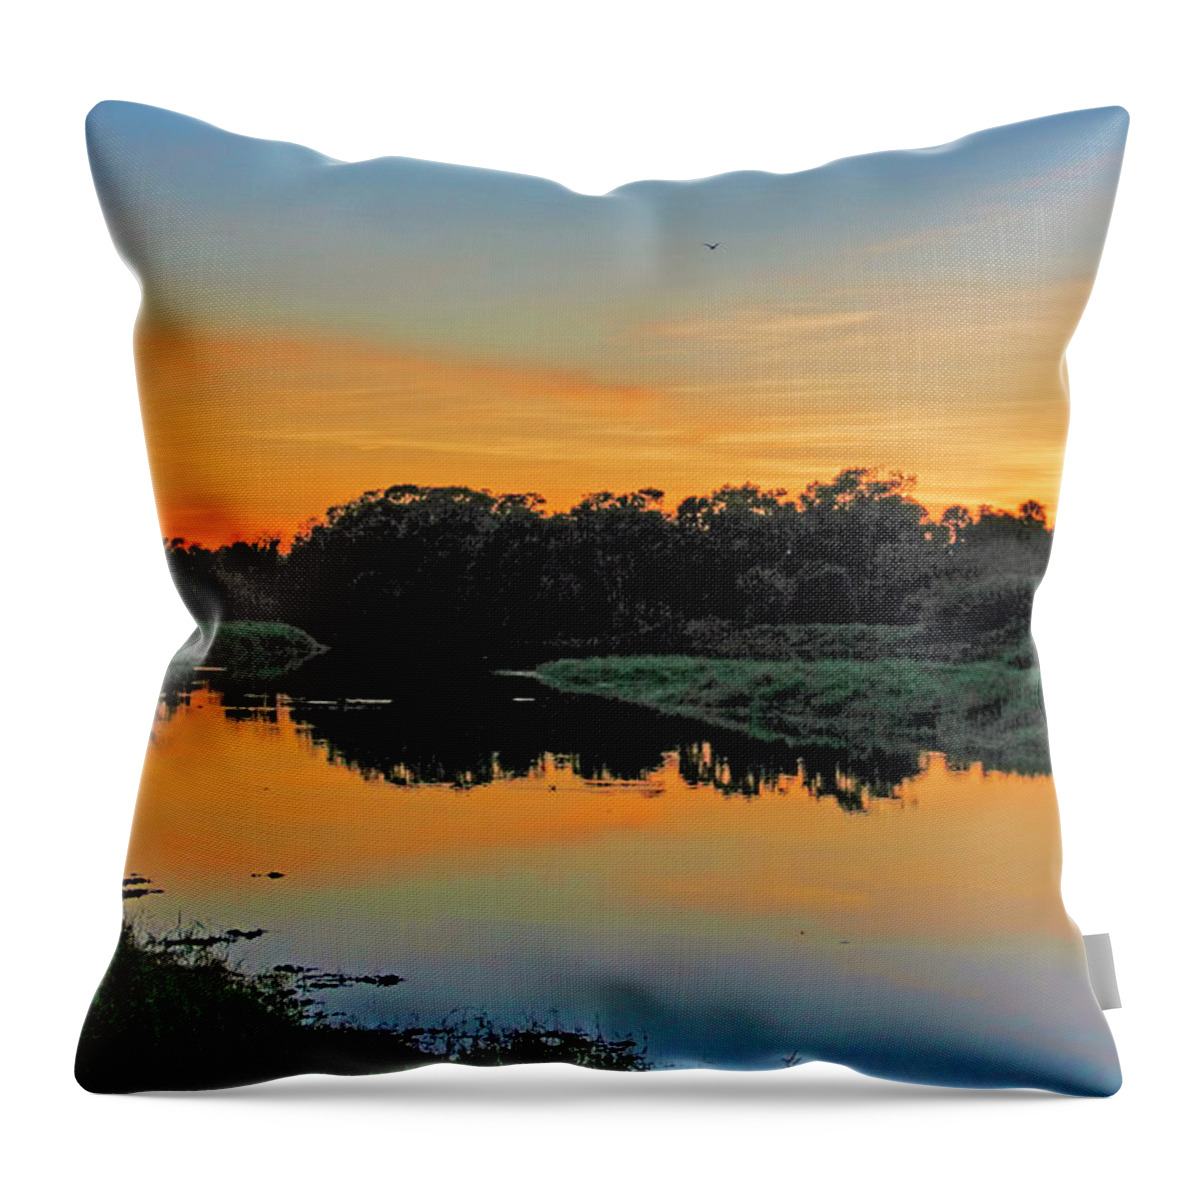 Myakka River State Park Throw Pillow featuring the photograph Myakka River State Park Sunset by H H Photography of Florida by HH Photography of Florida